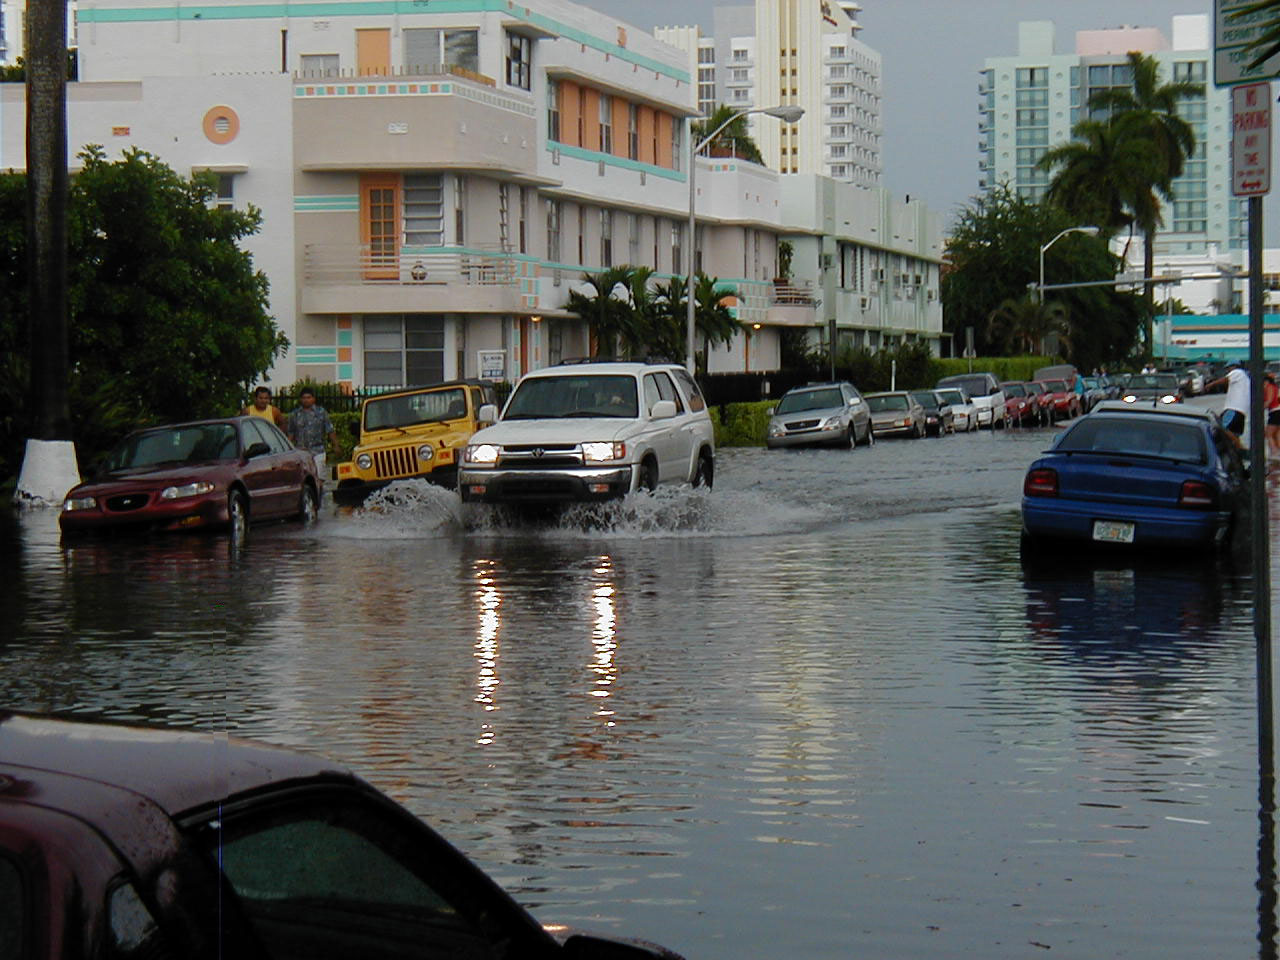 Miami flooding